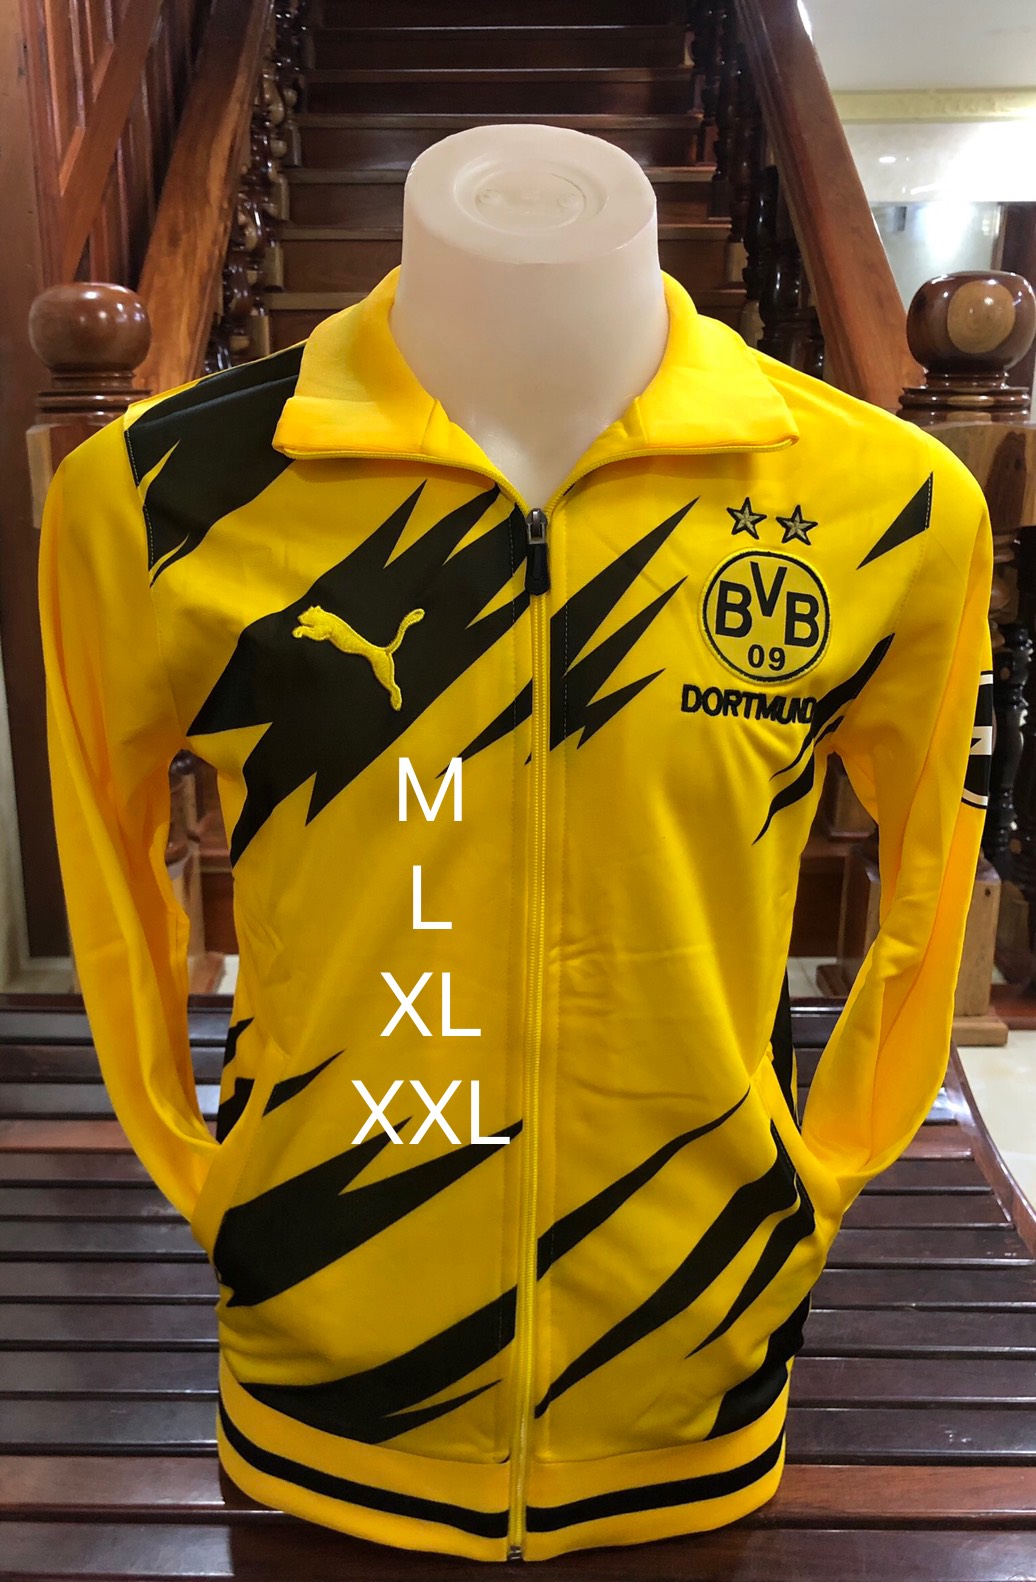 💥⚽เสื้อวอร์มผู้ชายทีมทีมโบรุสซีอาดอร์ทมุนท์/Borussia Dortmund (Dortmund) ตัวใหม่ล่าสุดฤดูกาล 2020-2021